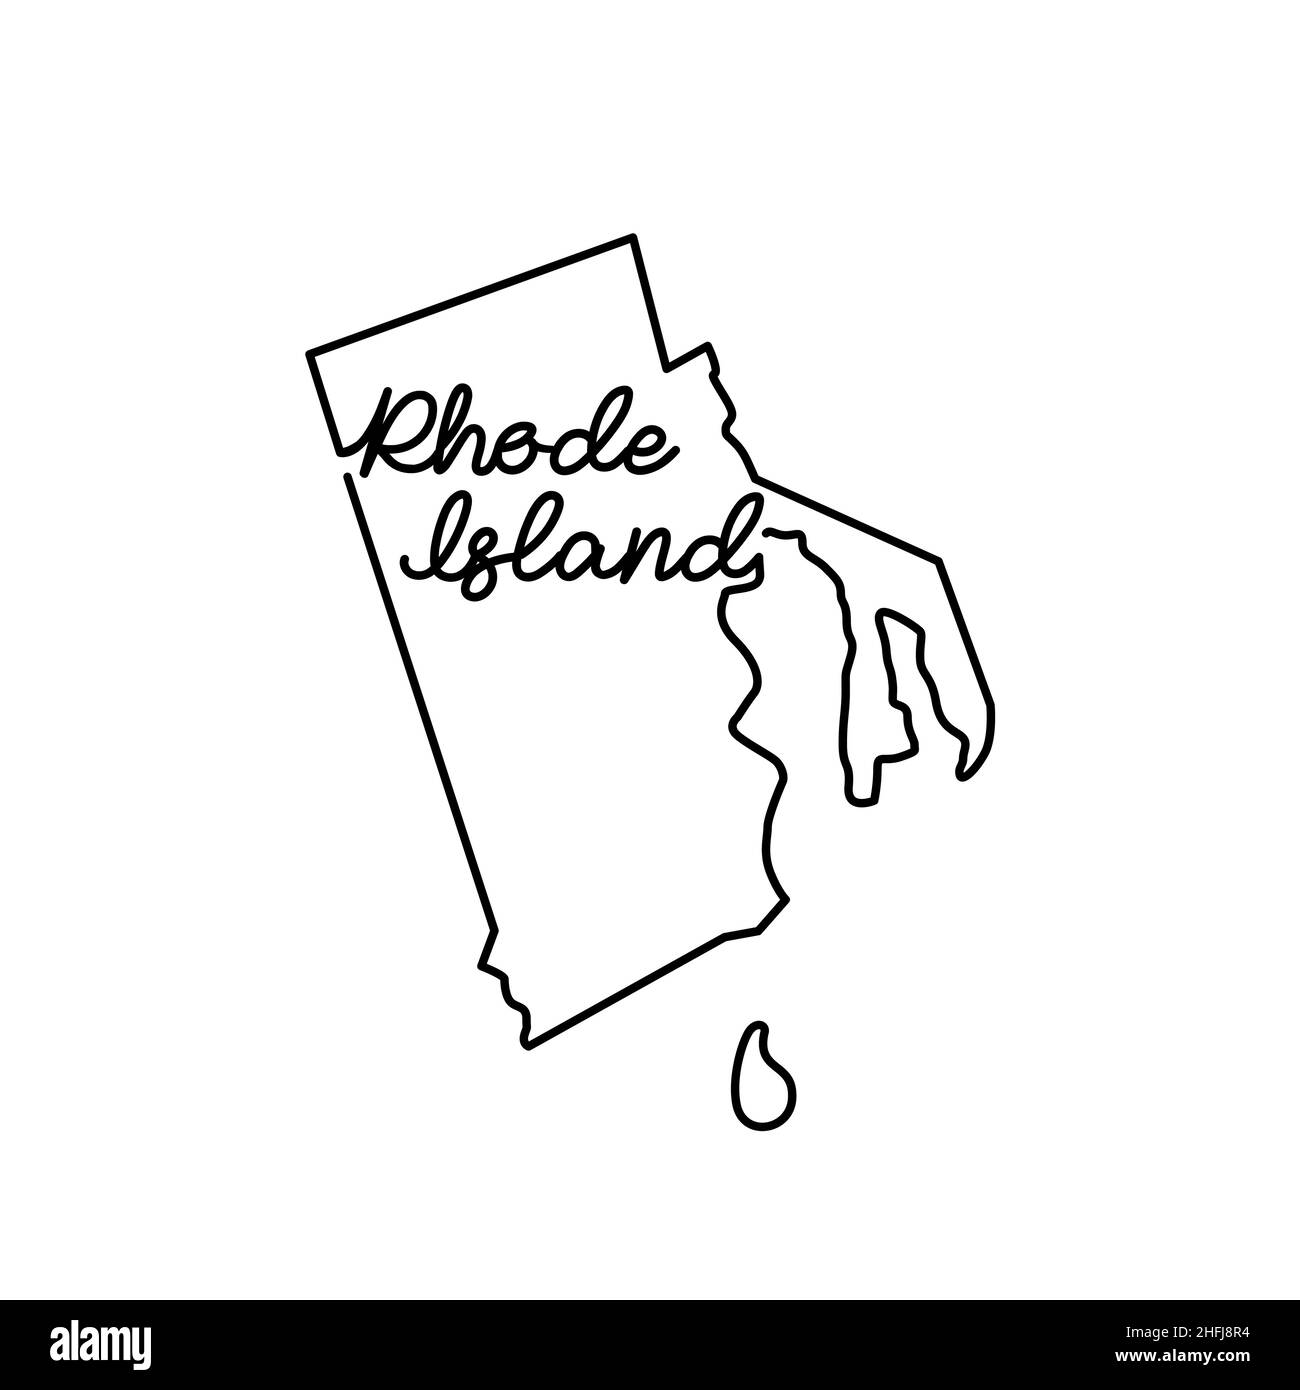 Carte de l'état américain du Rhode Island avec le nom manuscrit de l'état.Dessin de ligne continue de signe de maison patriotique.Un amour pour une petite patrie.T-shir Illustration de Vecteur